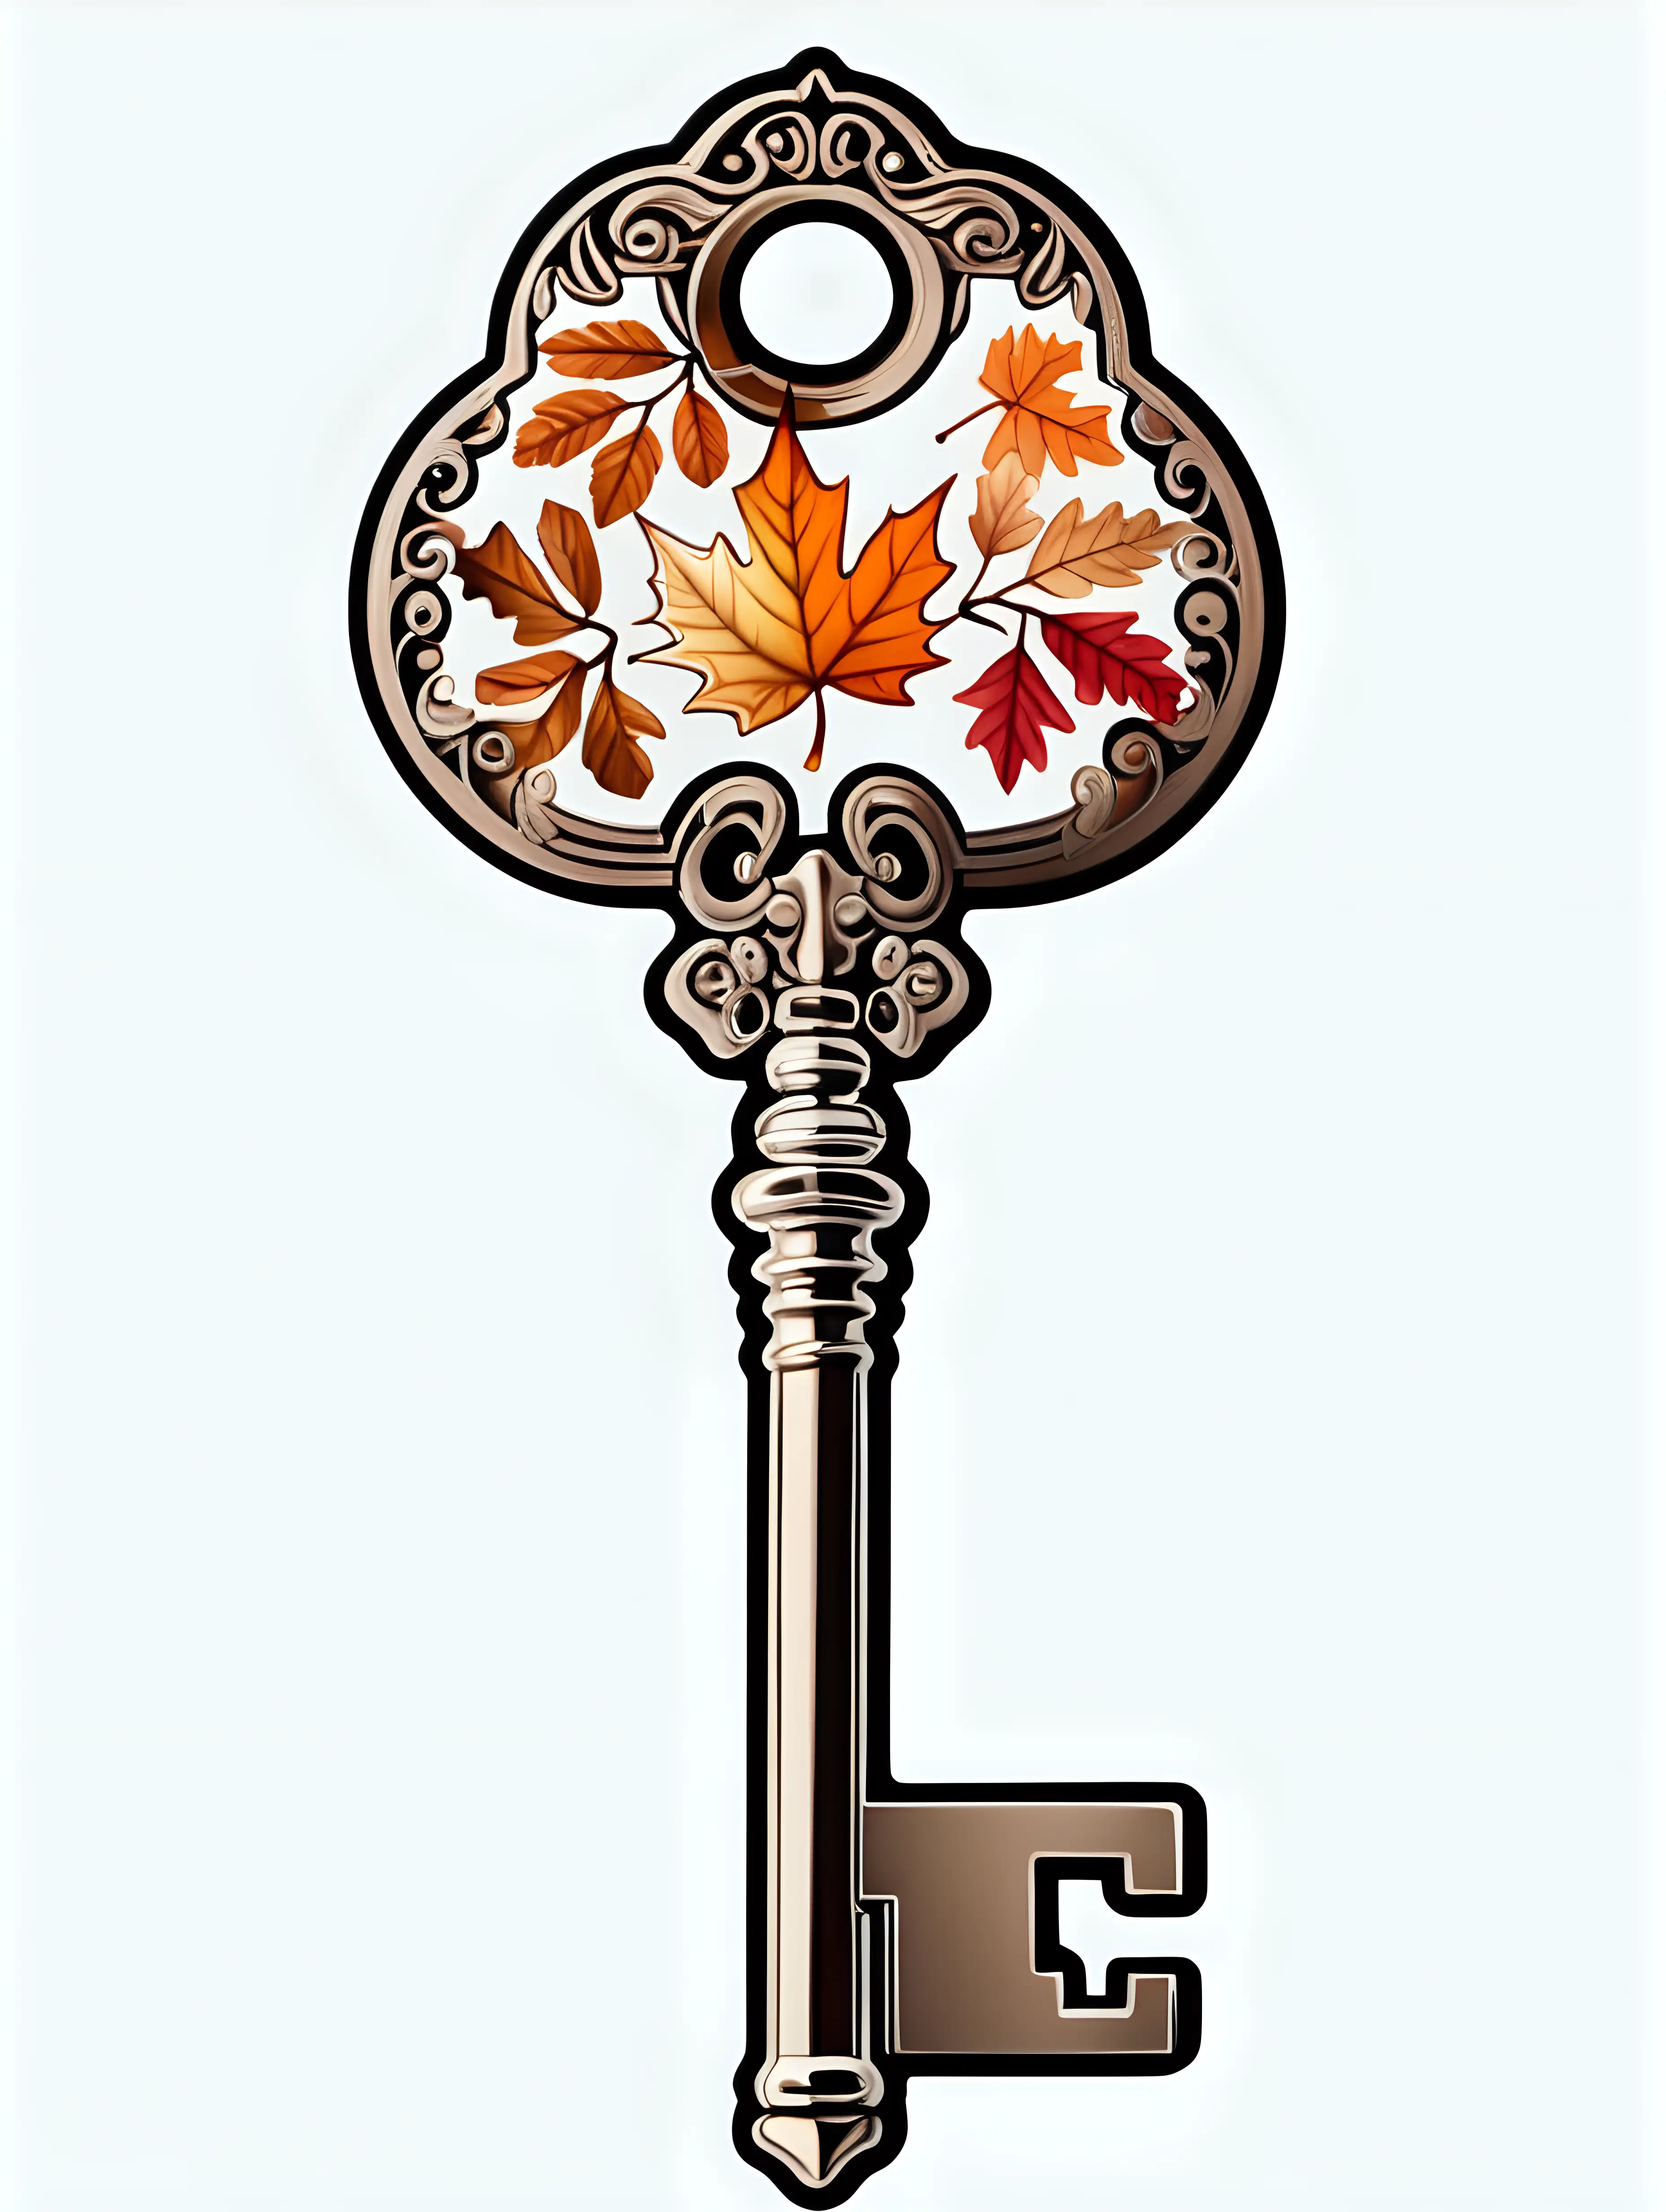 white background, samolepka klíče, jedná se o podzimní klíč s ornamenty, výplň klíče podzim, klíč má obrysy samolepky 